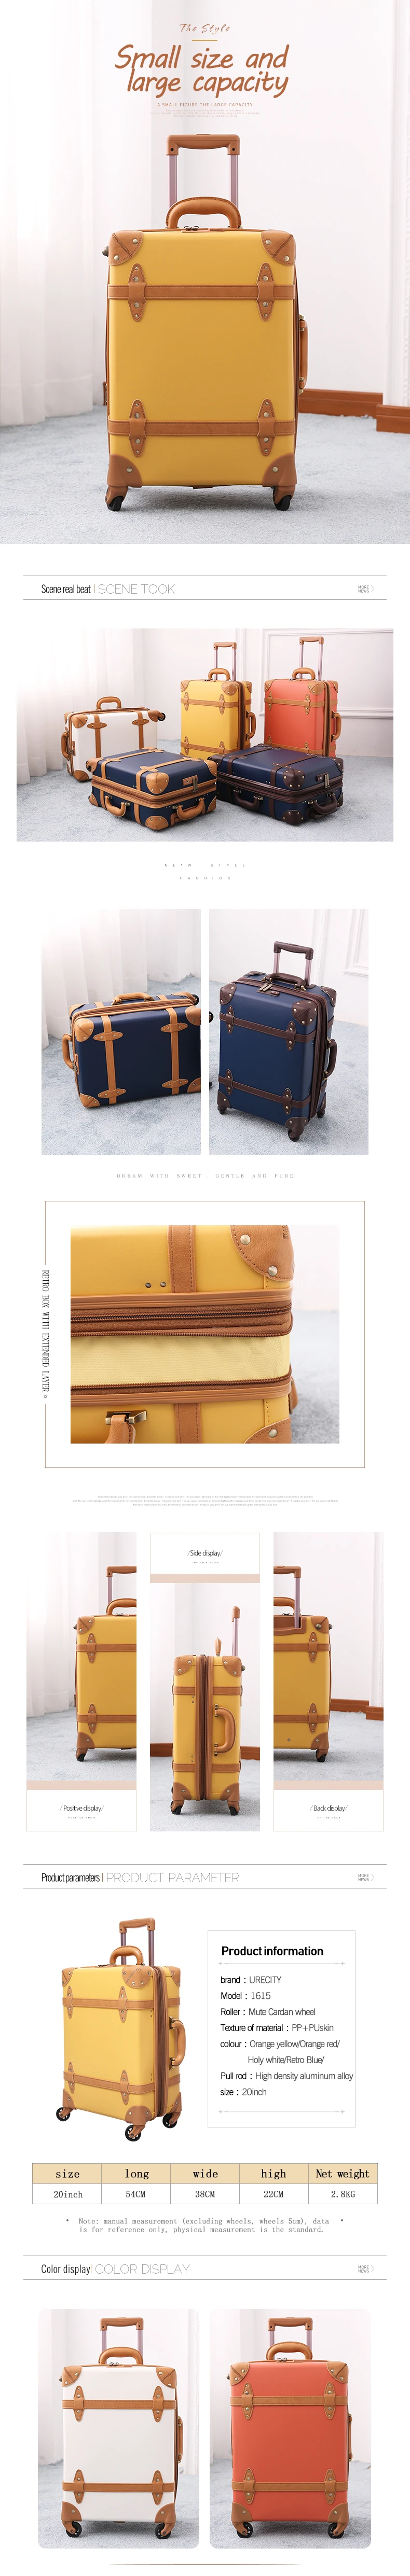 2018 большой чемодан багаж ретро кожаный чемодан дорожная сумка тележка spinner Натуральная кожа ручной клади Бесплатная доставка